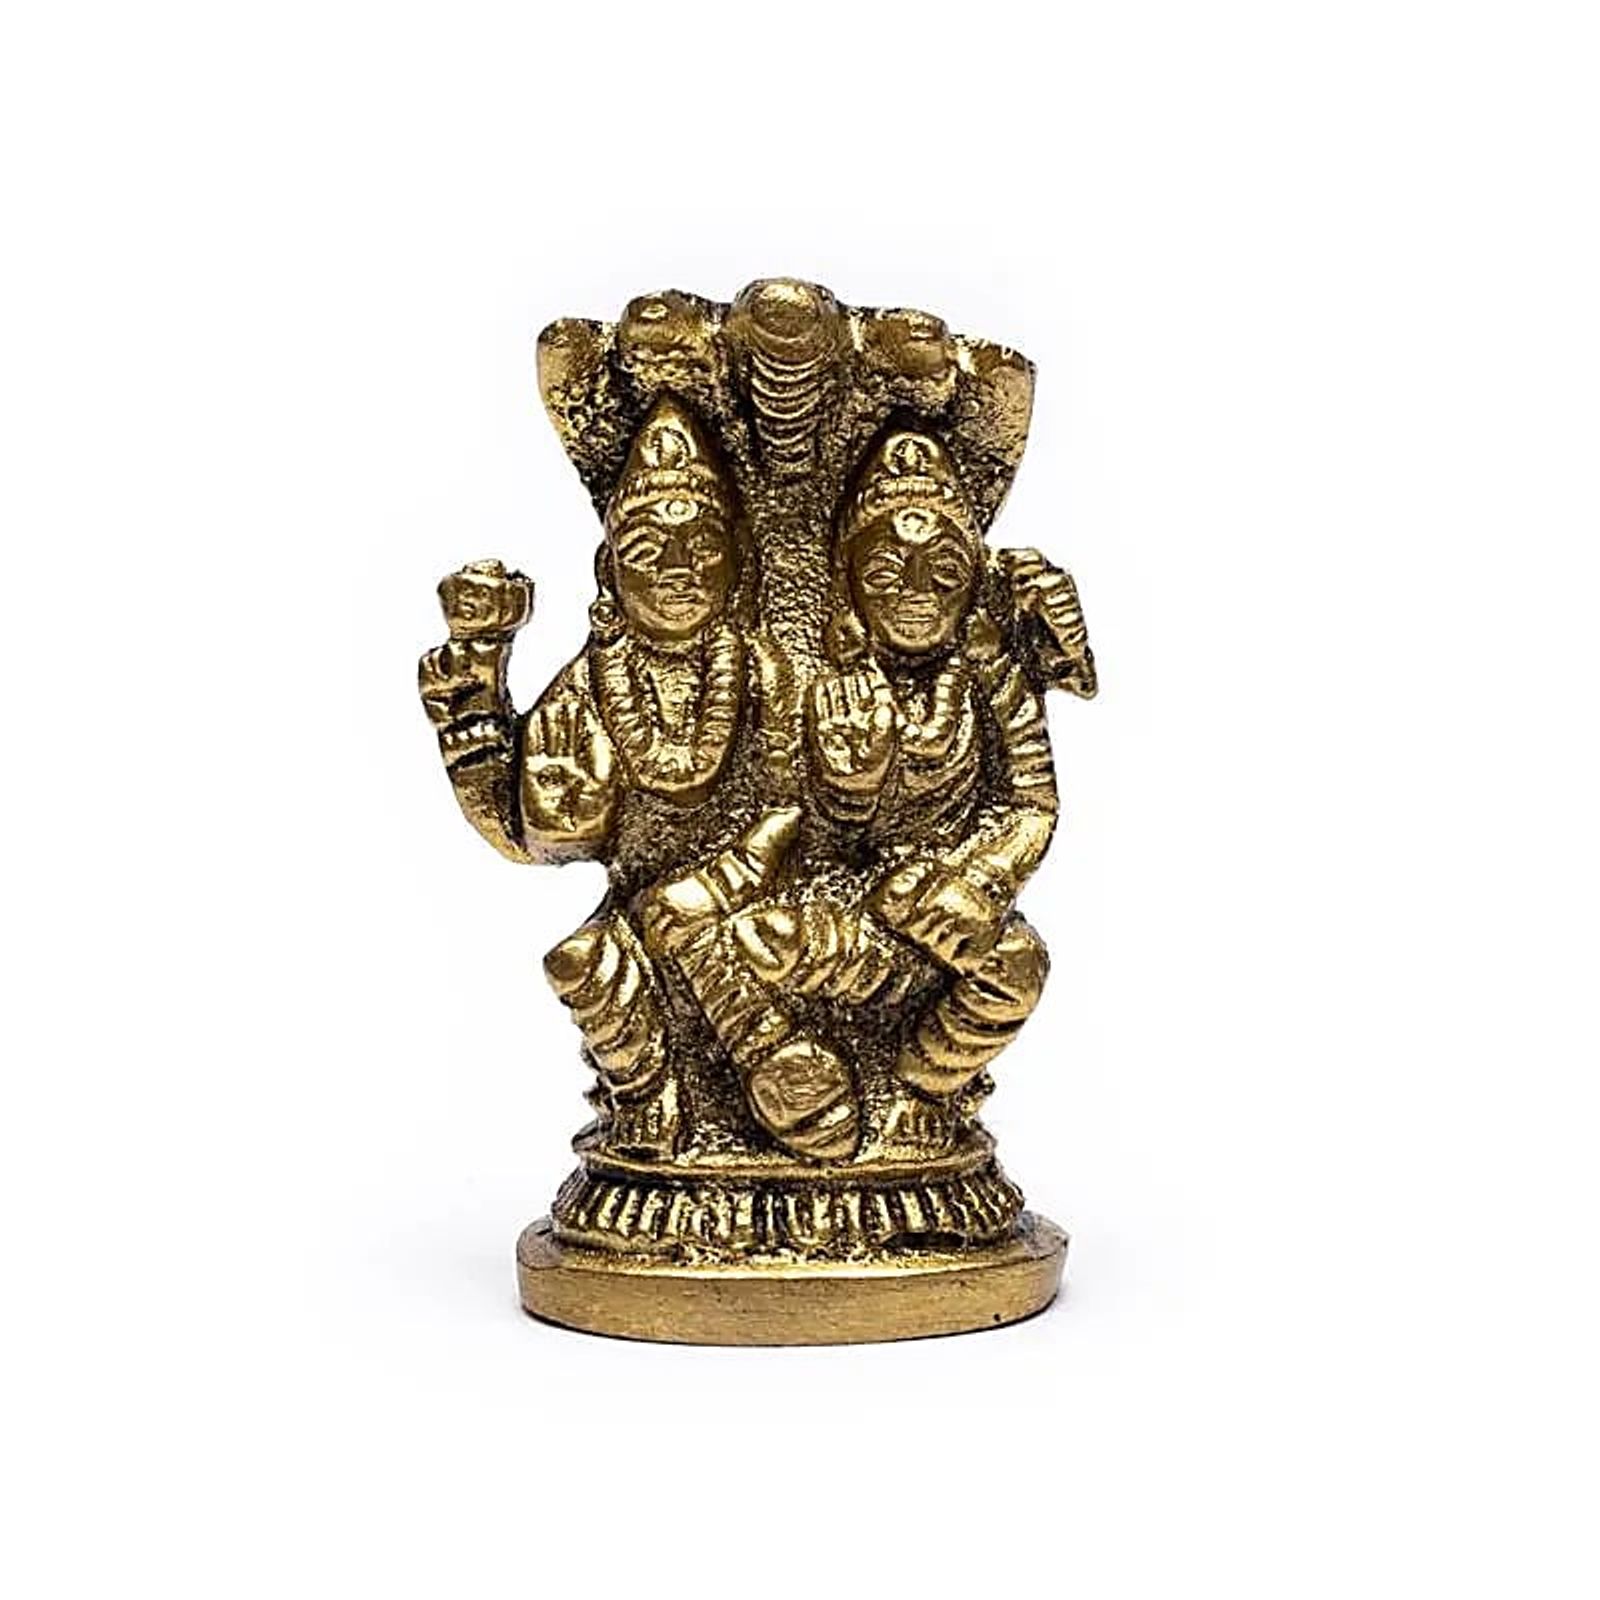 Hindu Gott-Statue Lord Vishnu Donnerstag -- 88 g; 5.5x3.5 cm